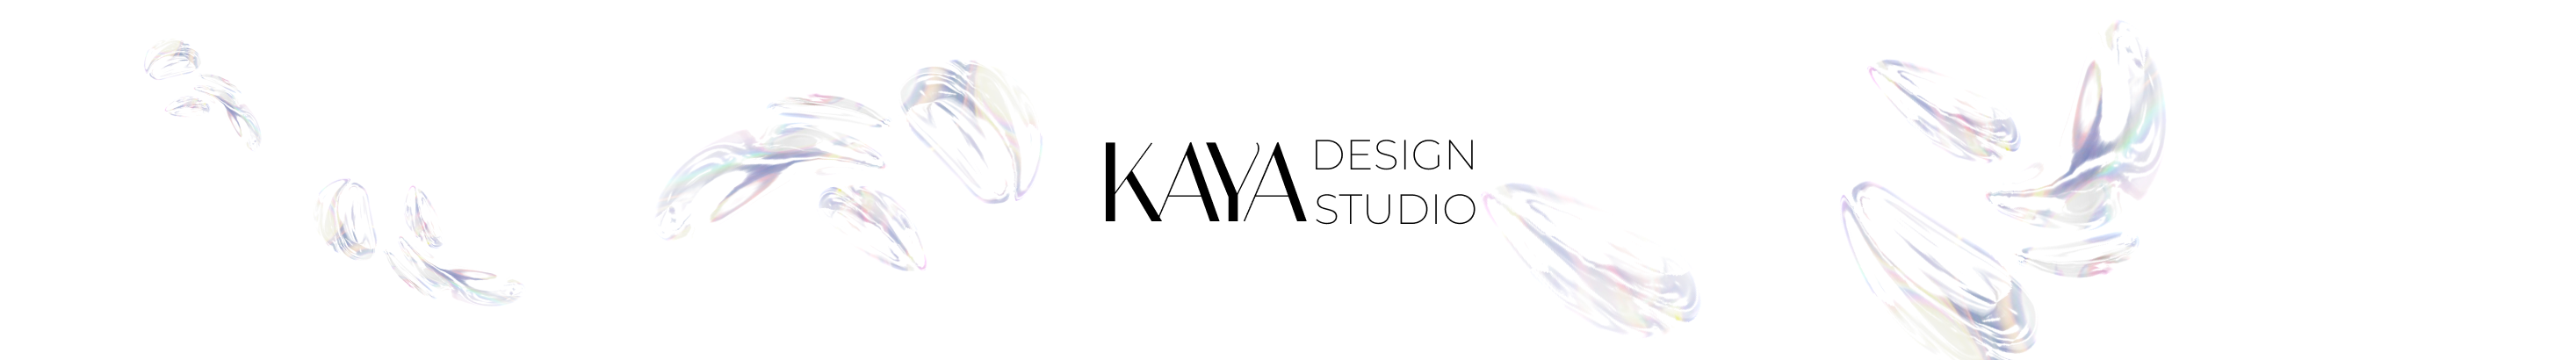 Profil-Banner von KAYA designstudio